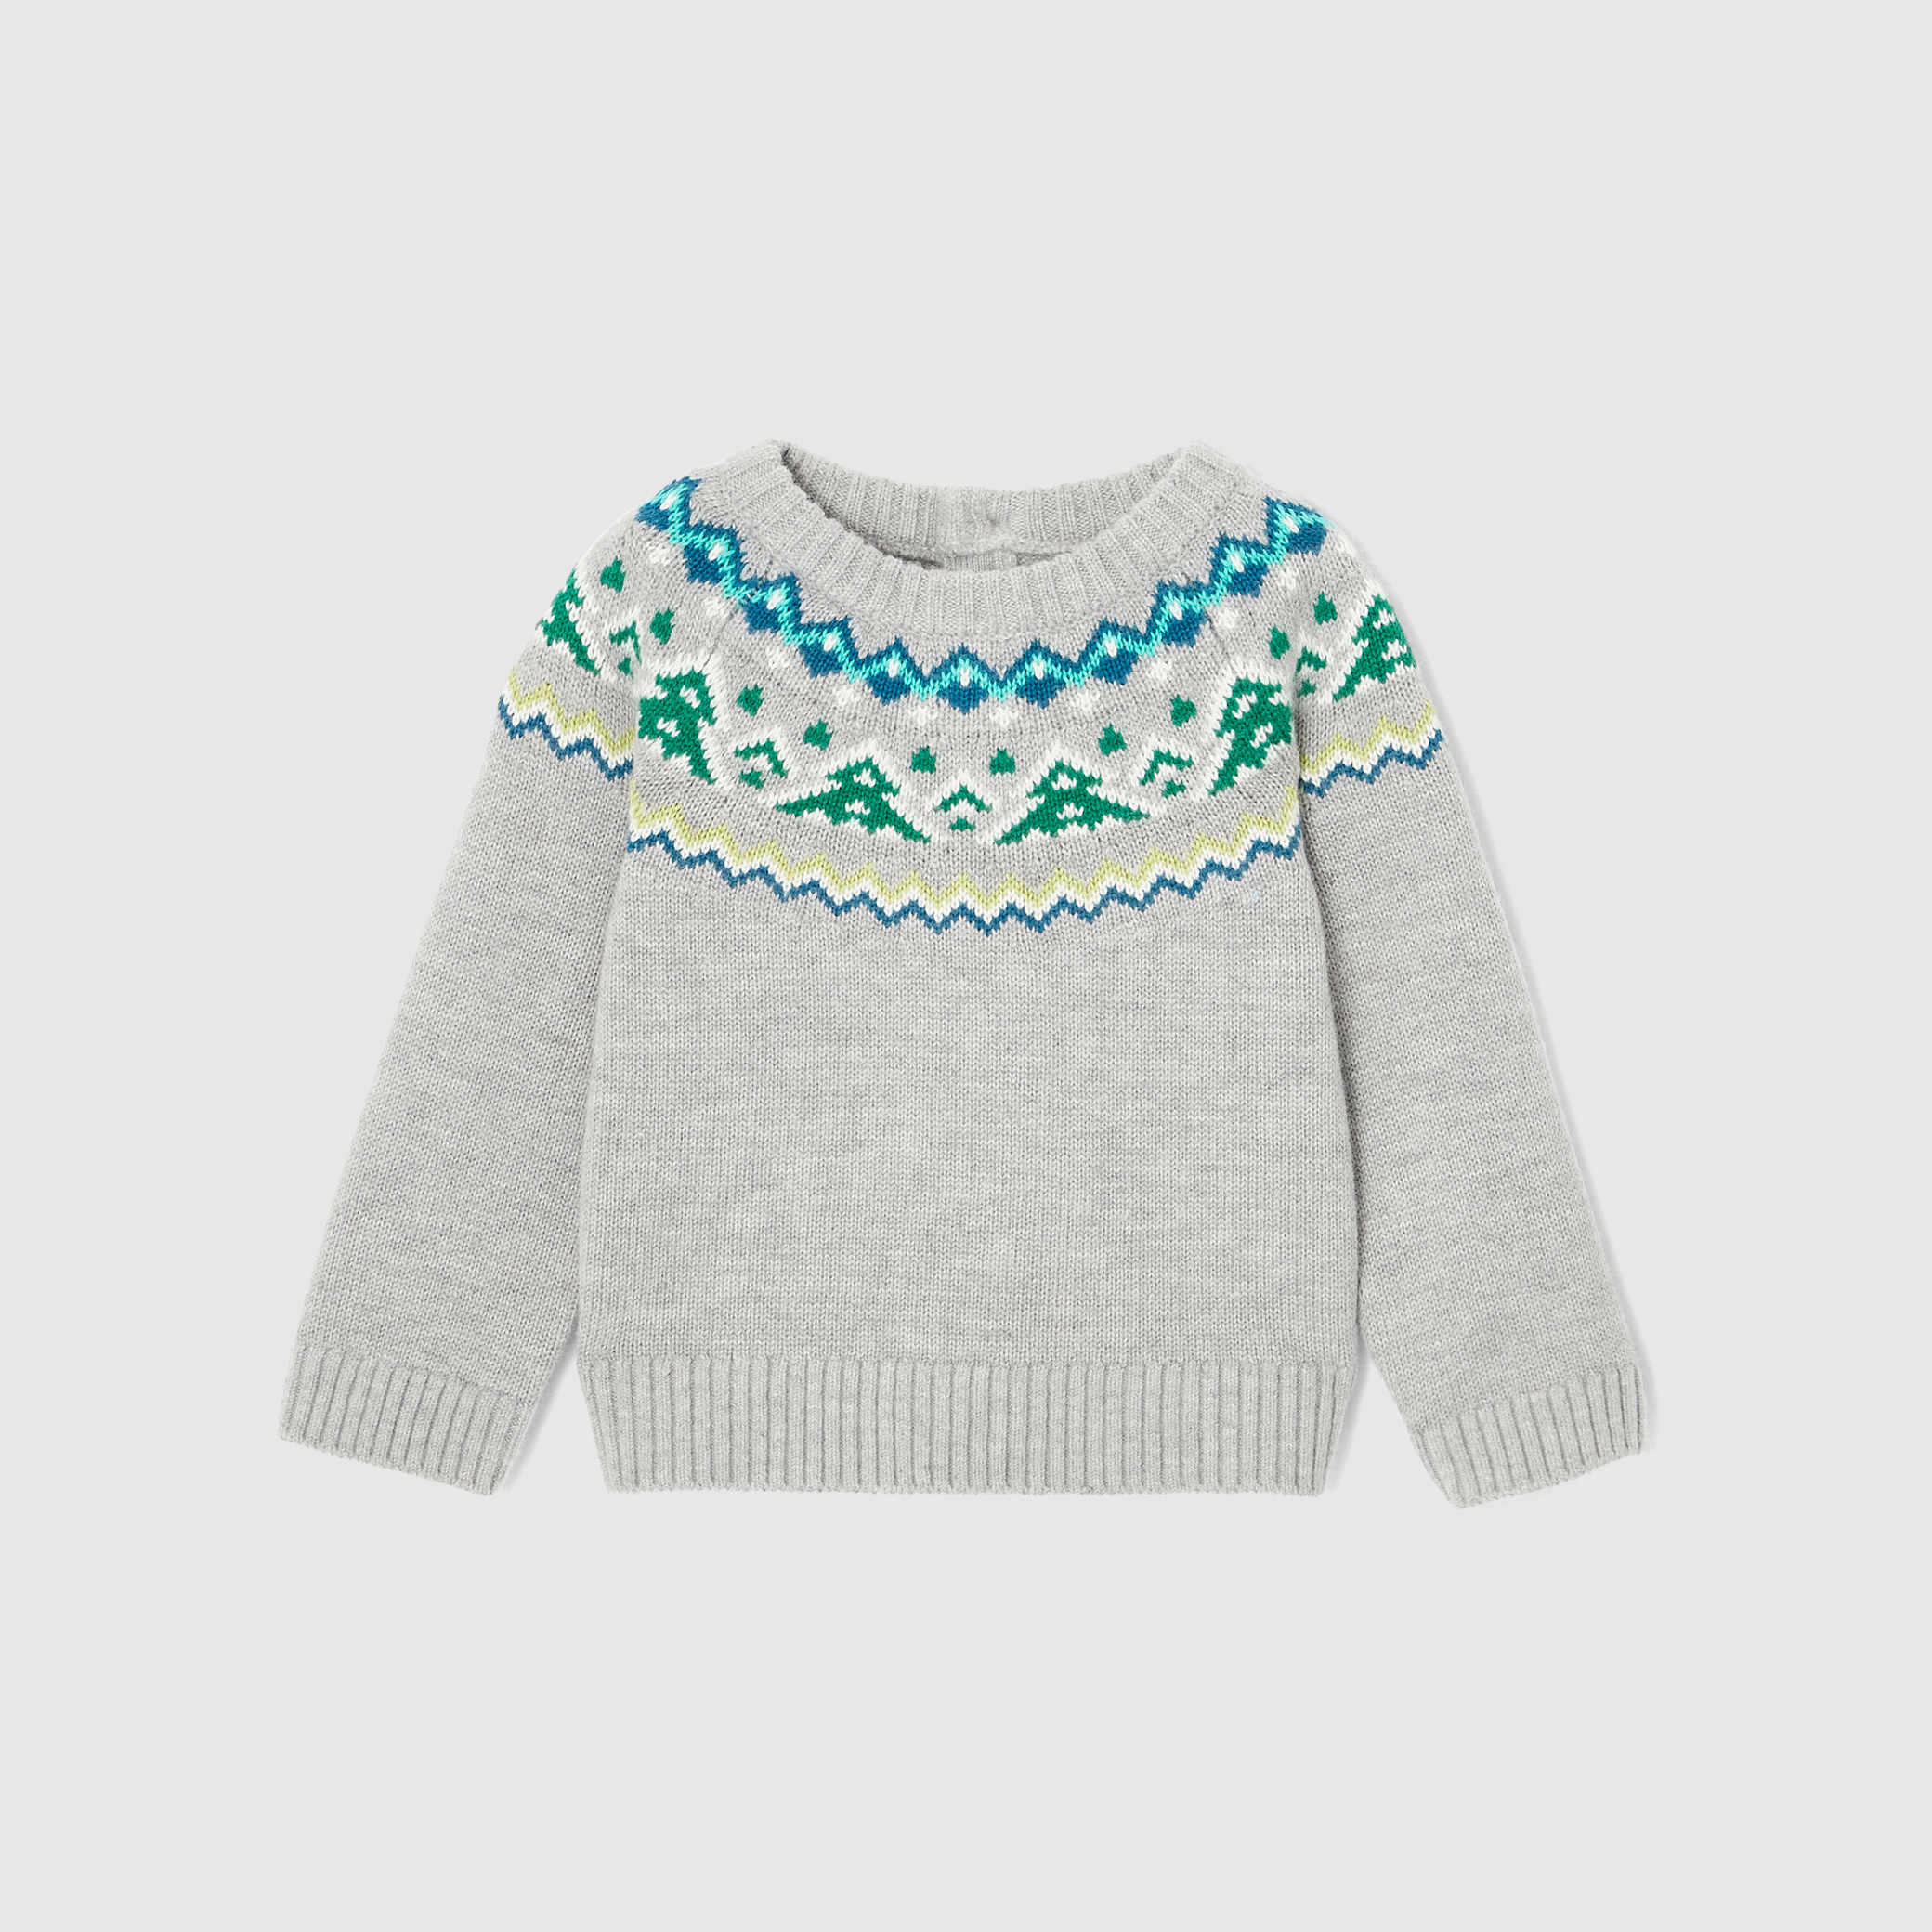 Toddler boy jacquard collar sweater